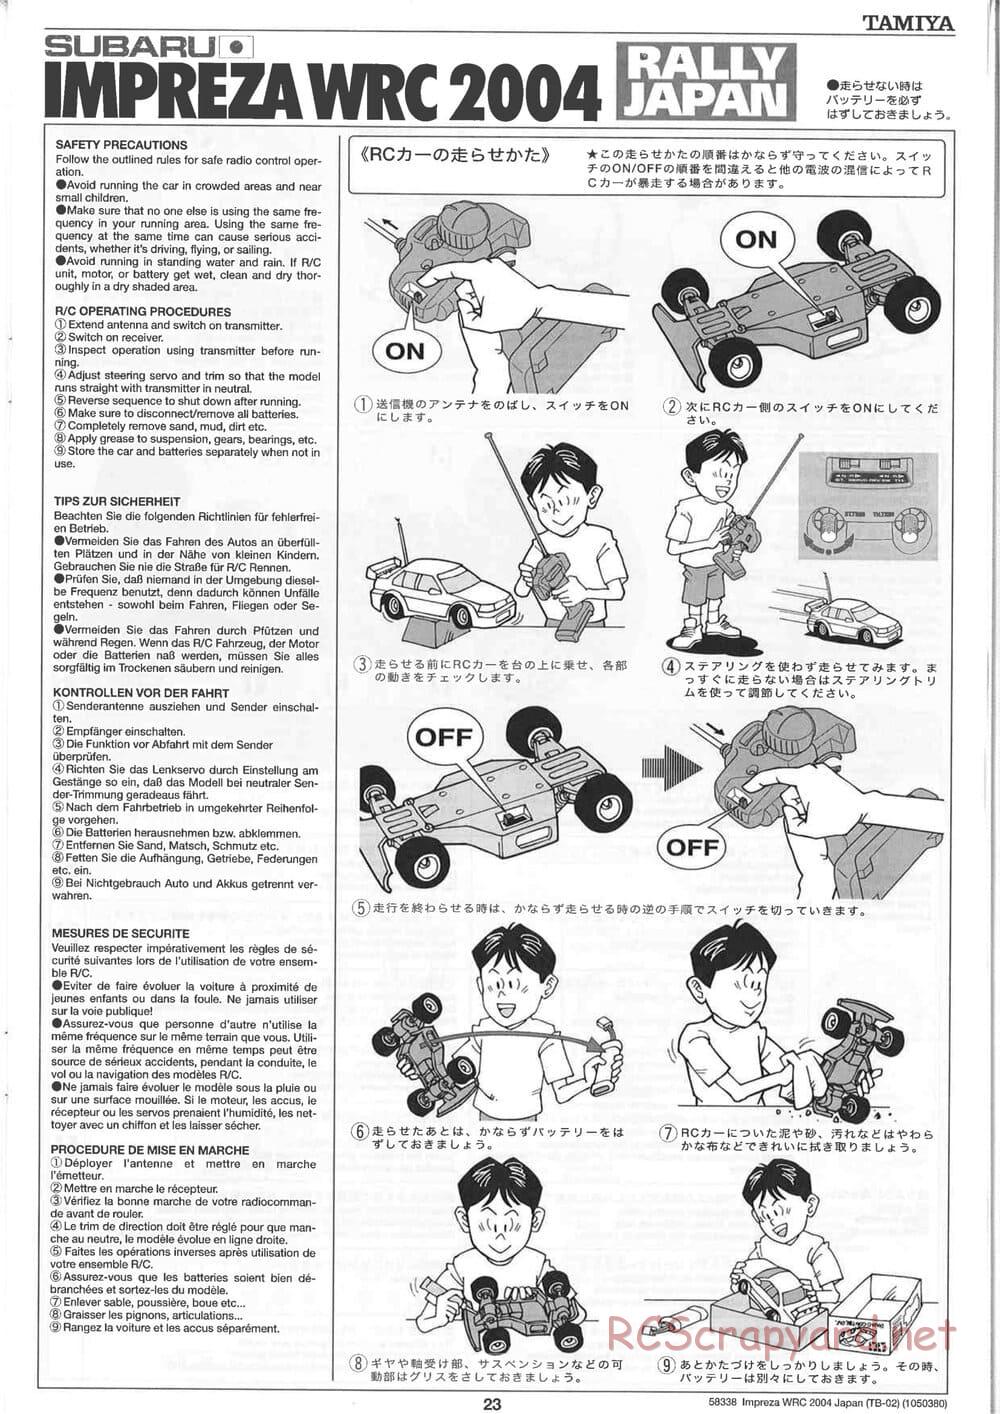 Tamiya - Subaru Impreza WRC 2004 Rally Japan - TB-02 Chassis - Manual - Page 23